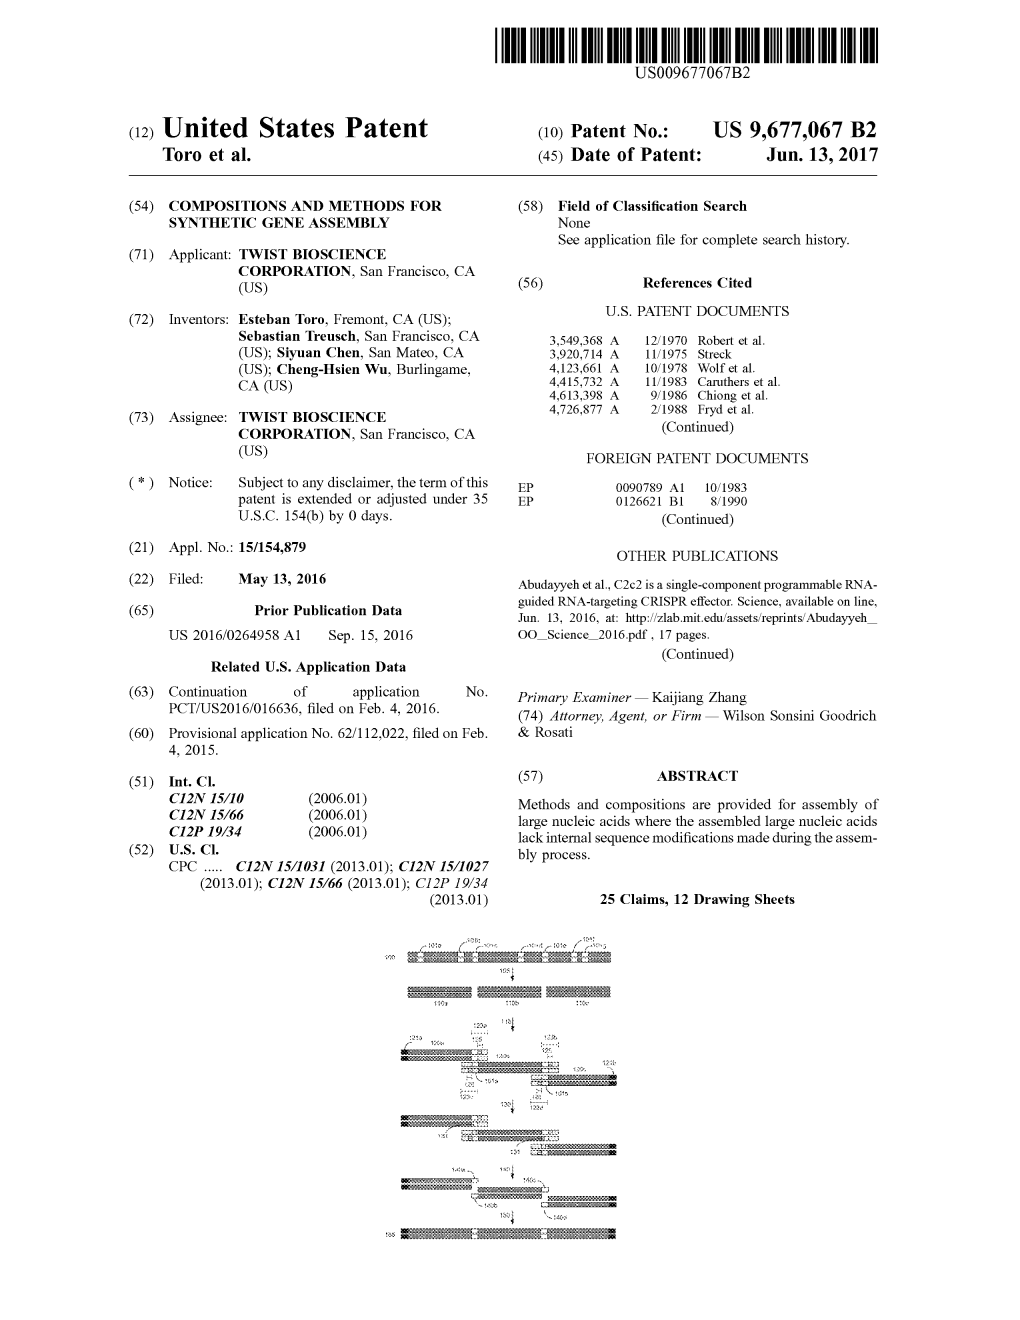 (12) United States Patent (10) Patent No.: US 9,677,067 B2 Toro Et Al